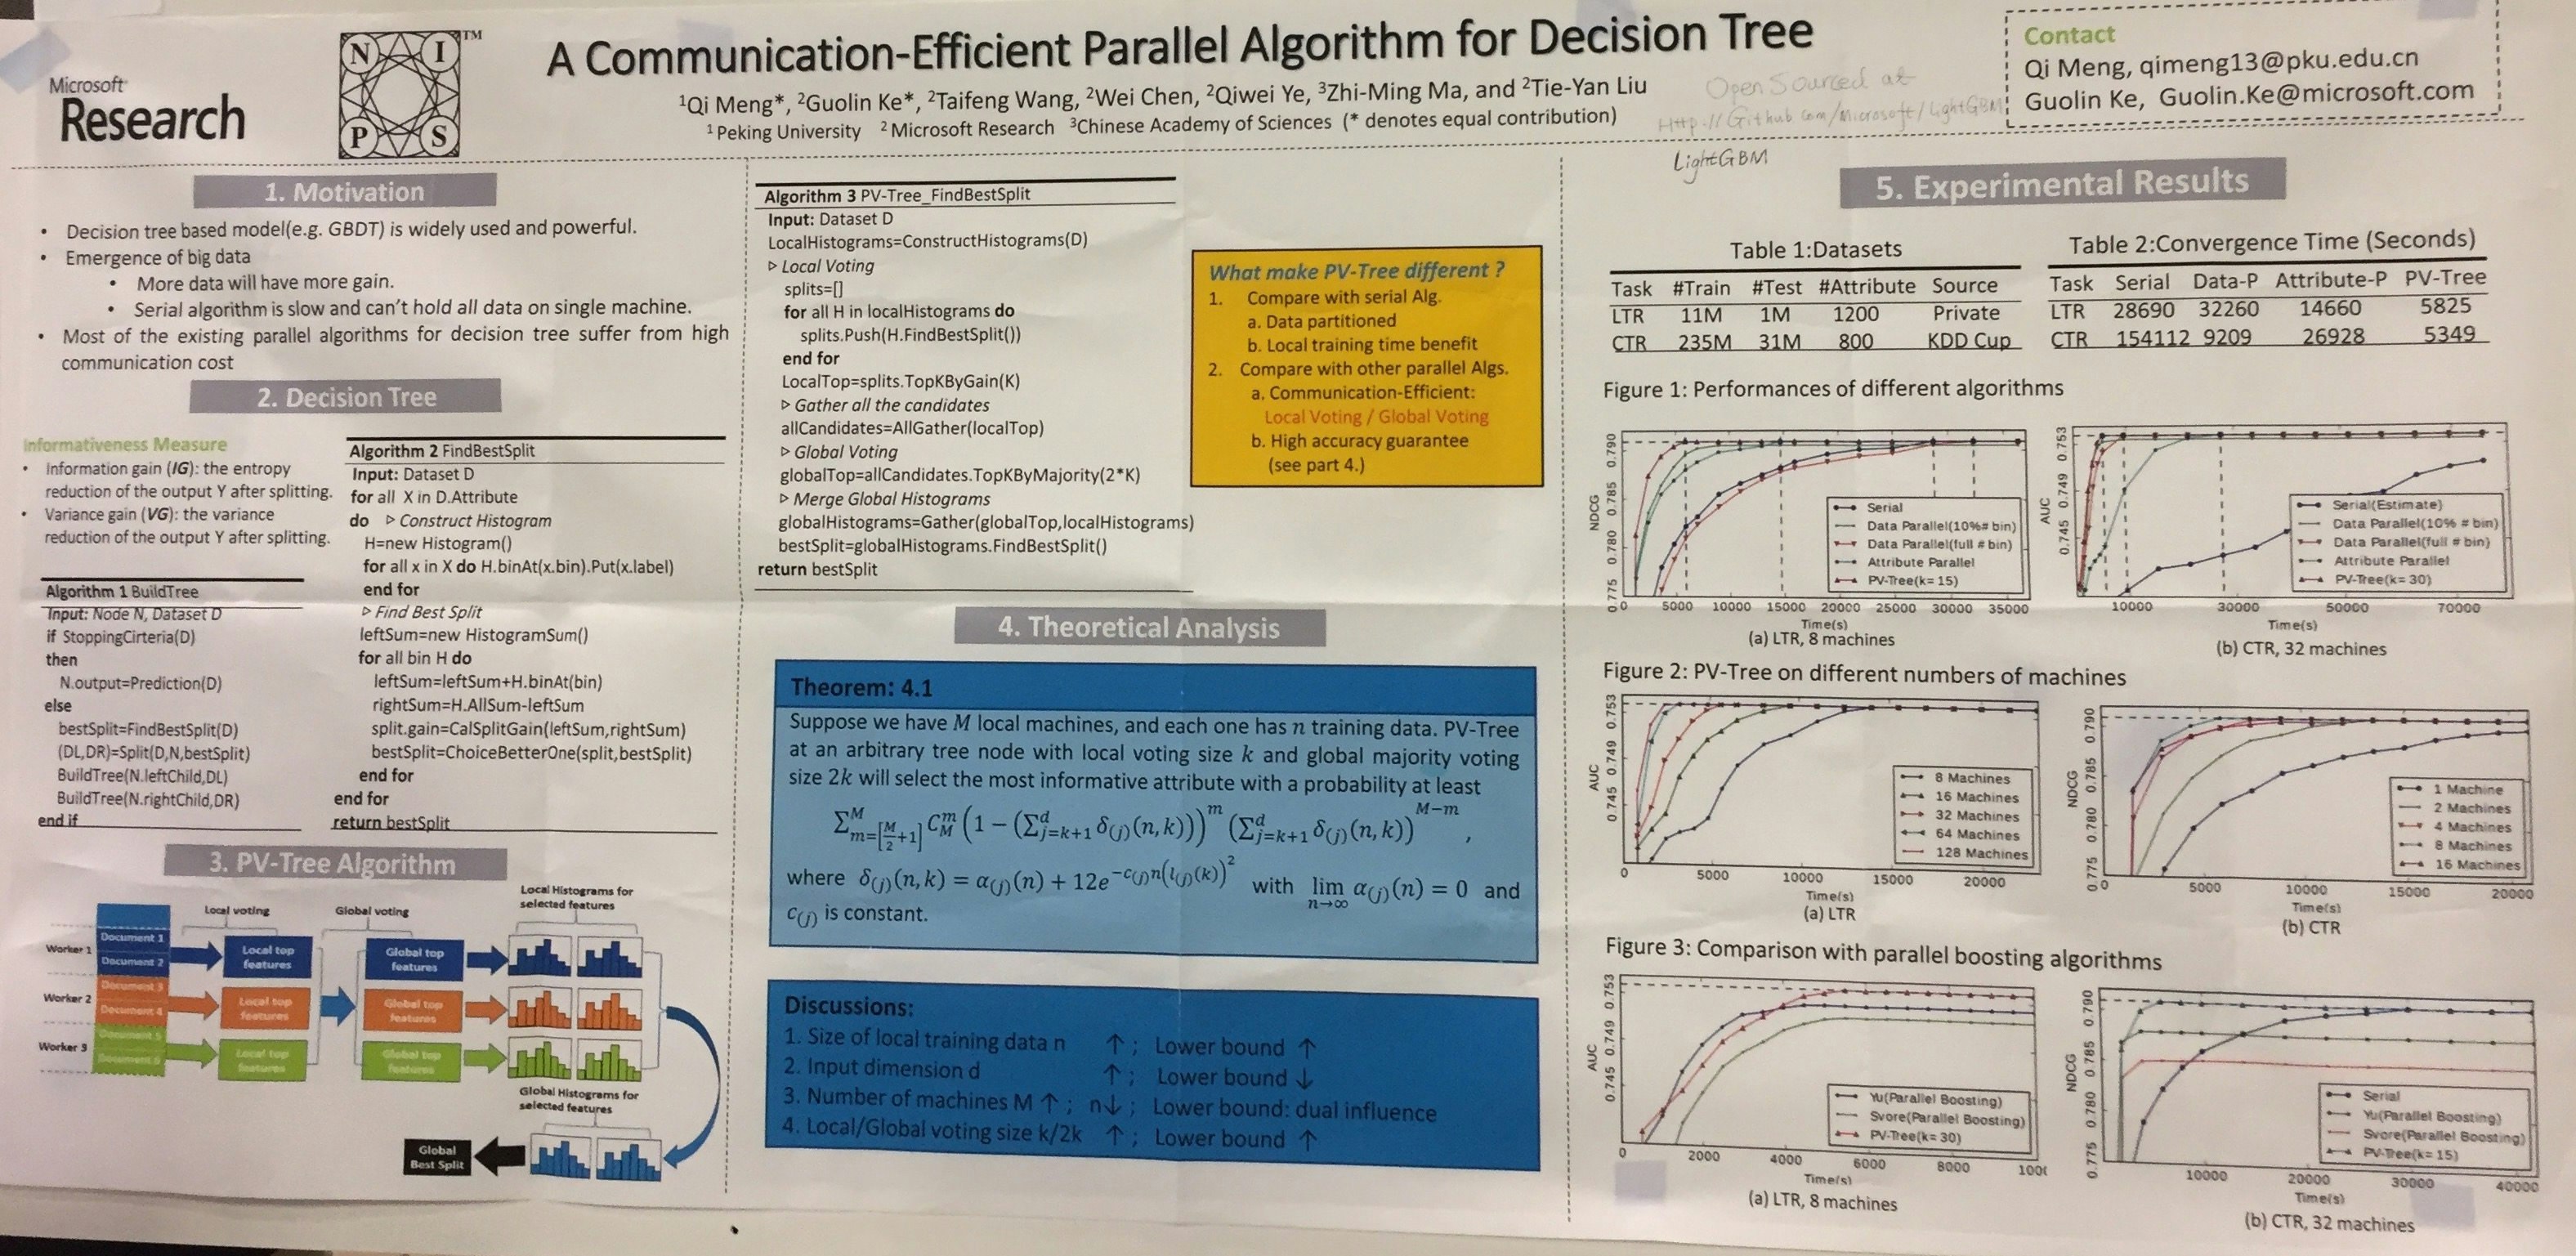 Meng_A_Communication-Efficient_Parallel_Algorithm_for_Decision_Tree.jpg